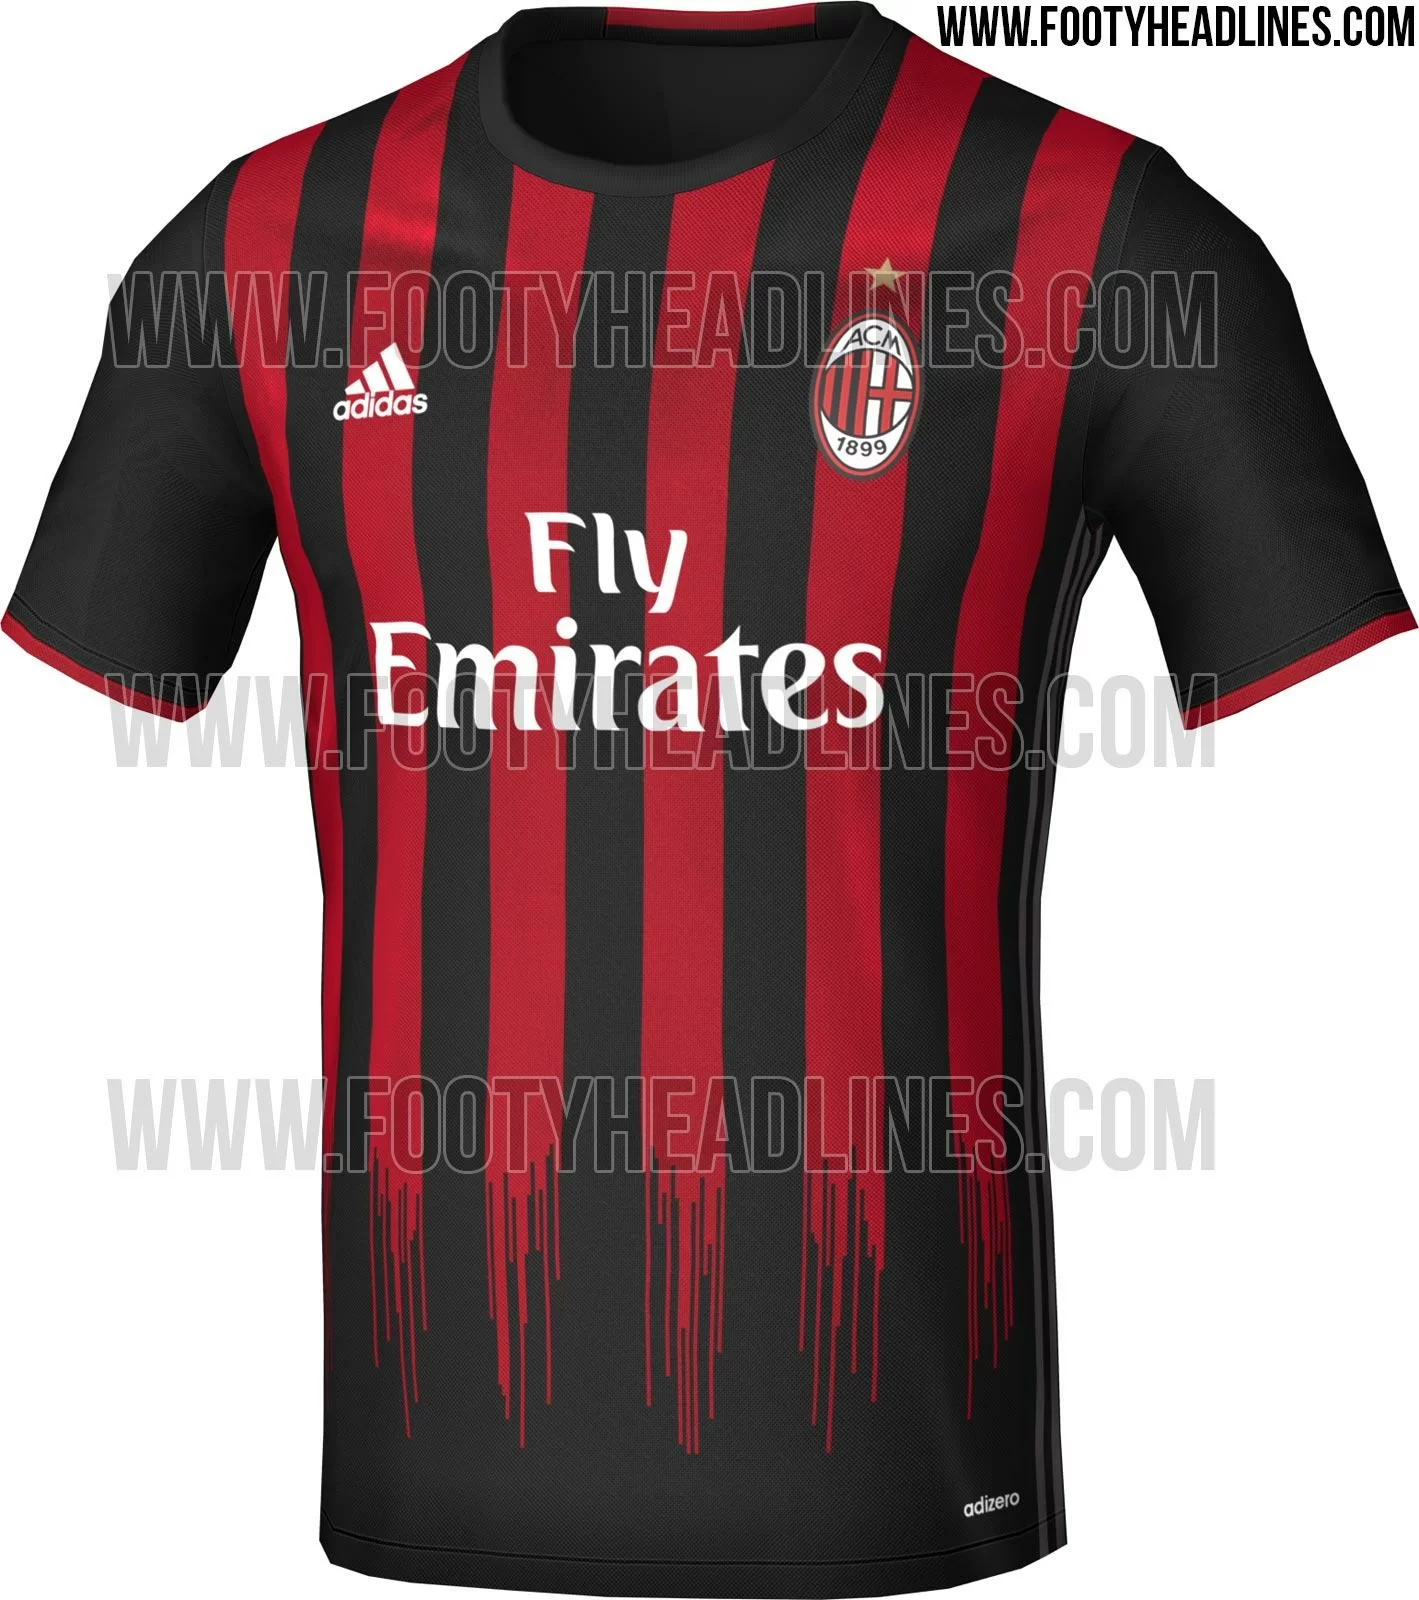 FOTO/ Sarà questa la maglia del Milan il prossimo anno?